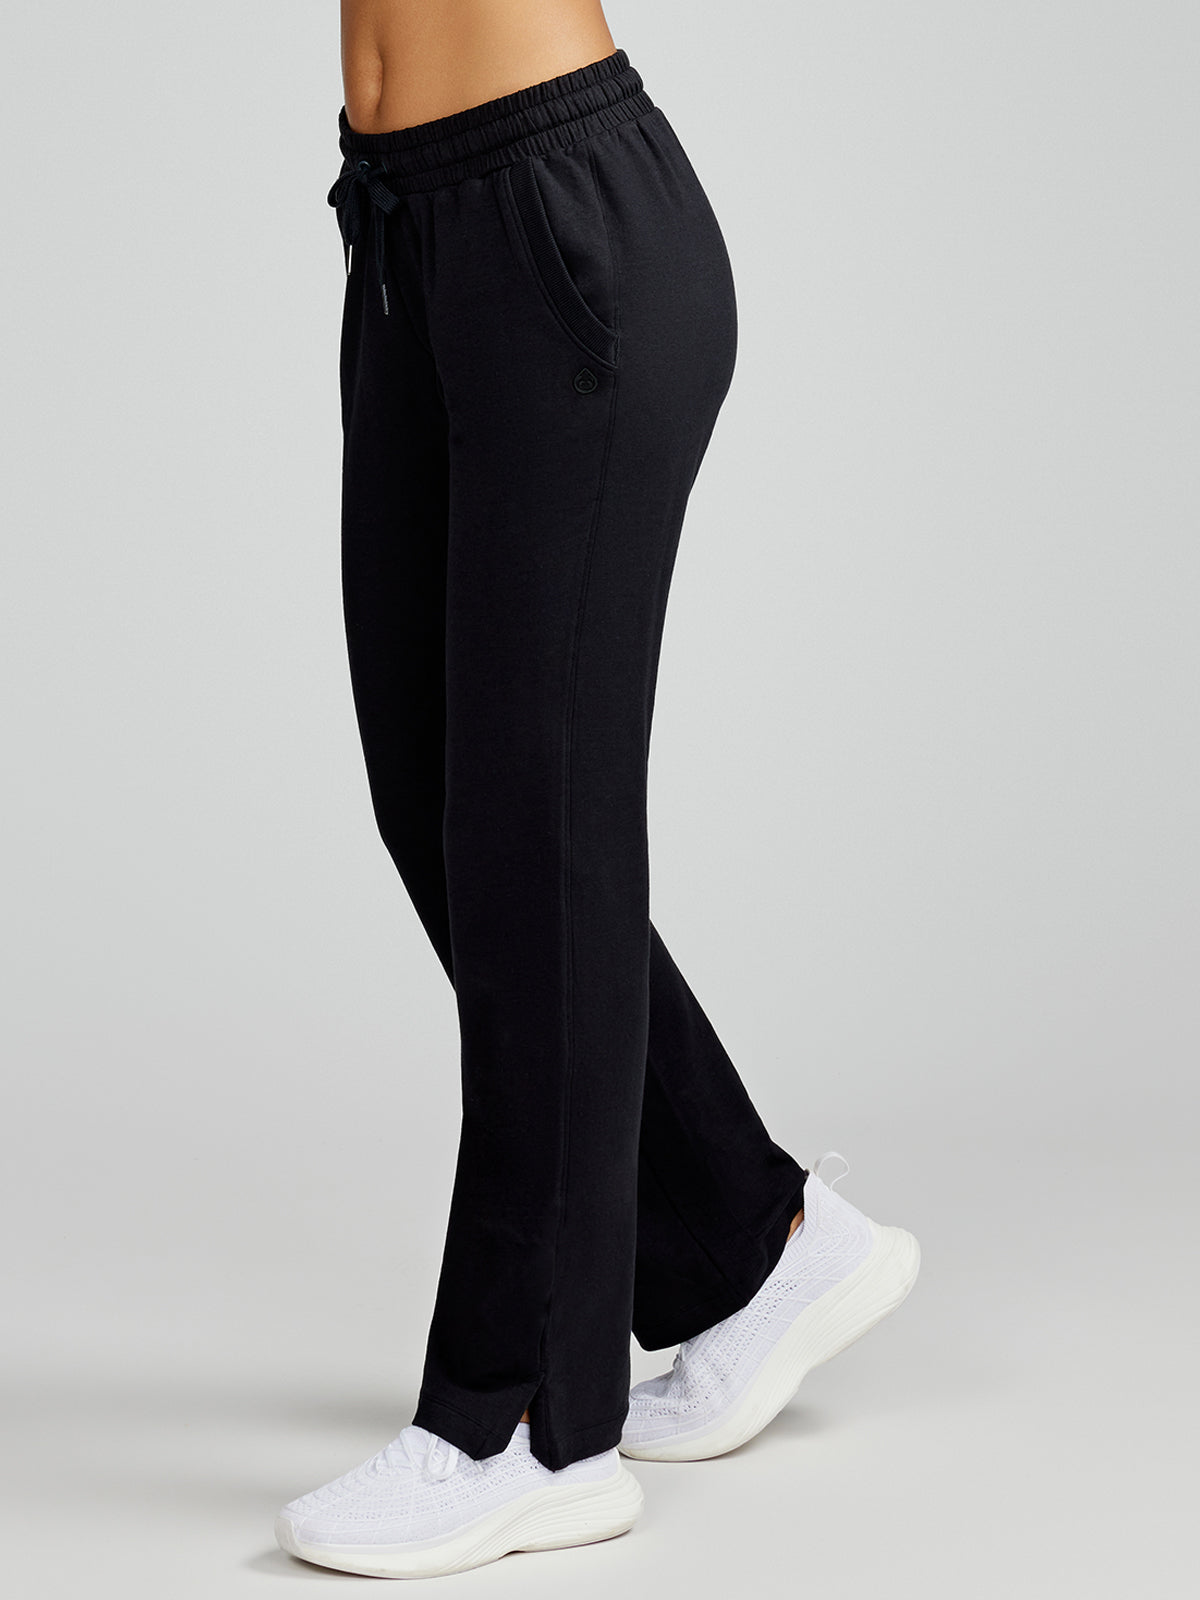 MTA Sport Black Elastic Waist Ankle Zip Activewear Pants Women's